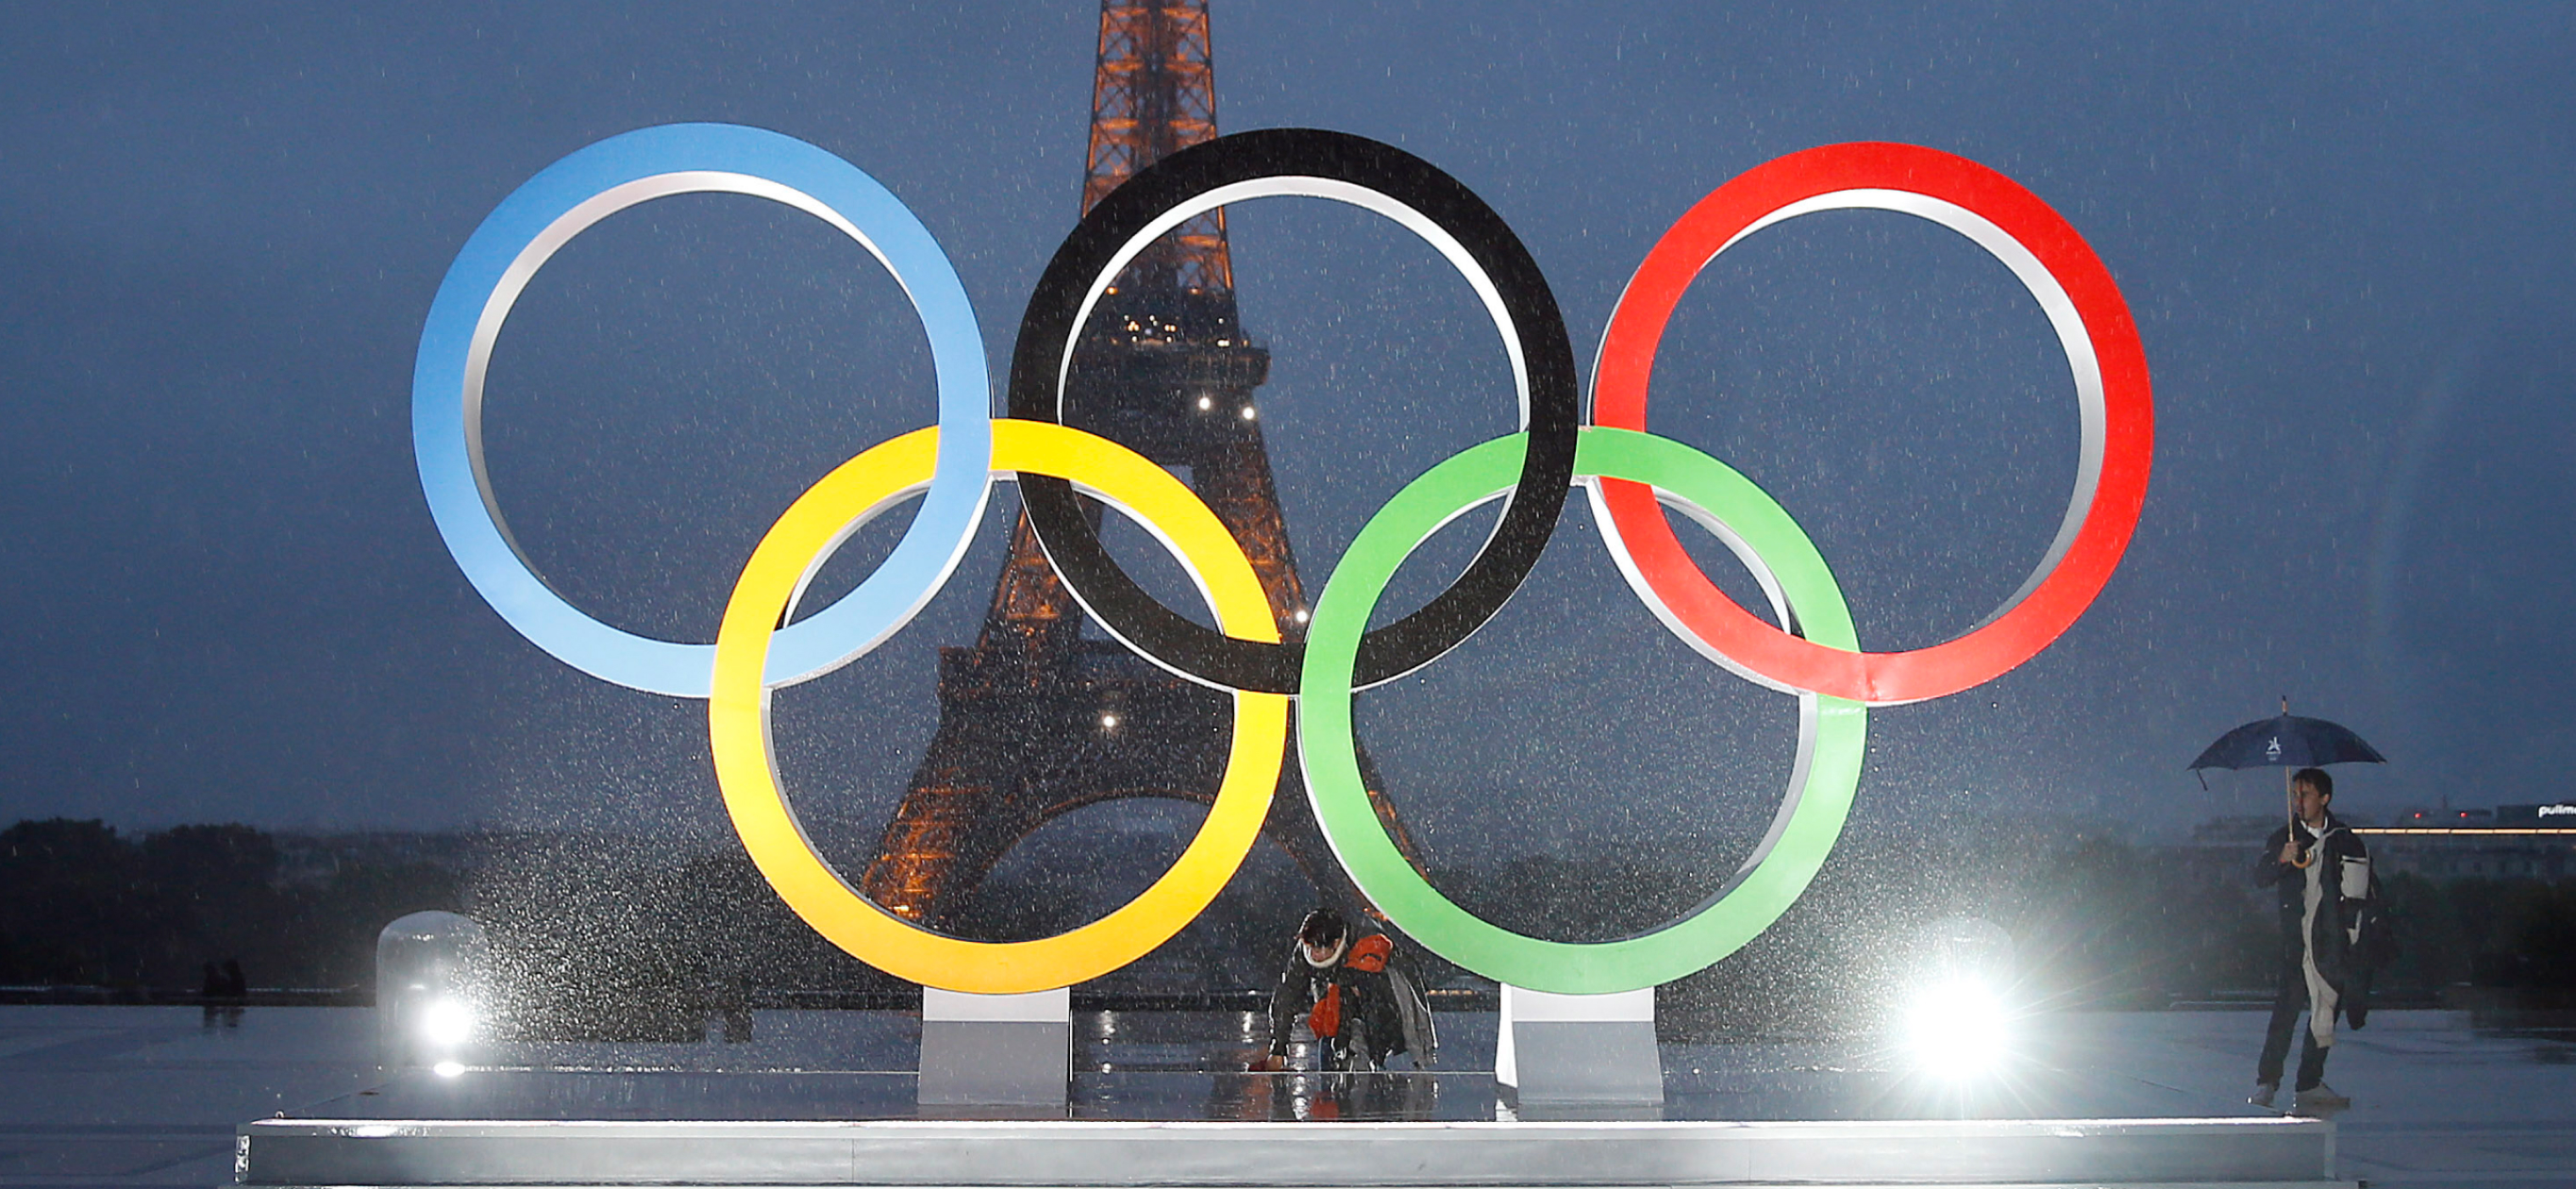 10 часто задаваемых вопросов об Олим­пий­ских играх